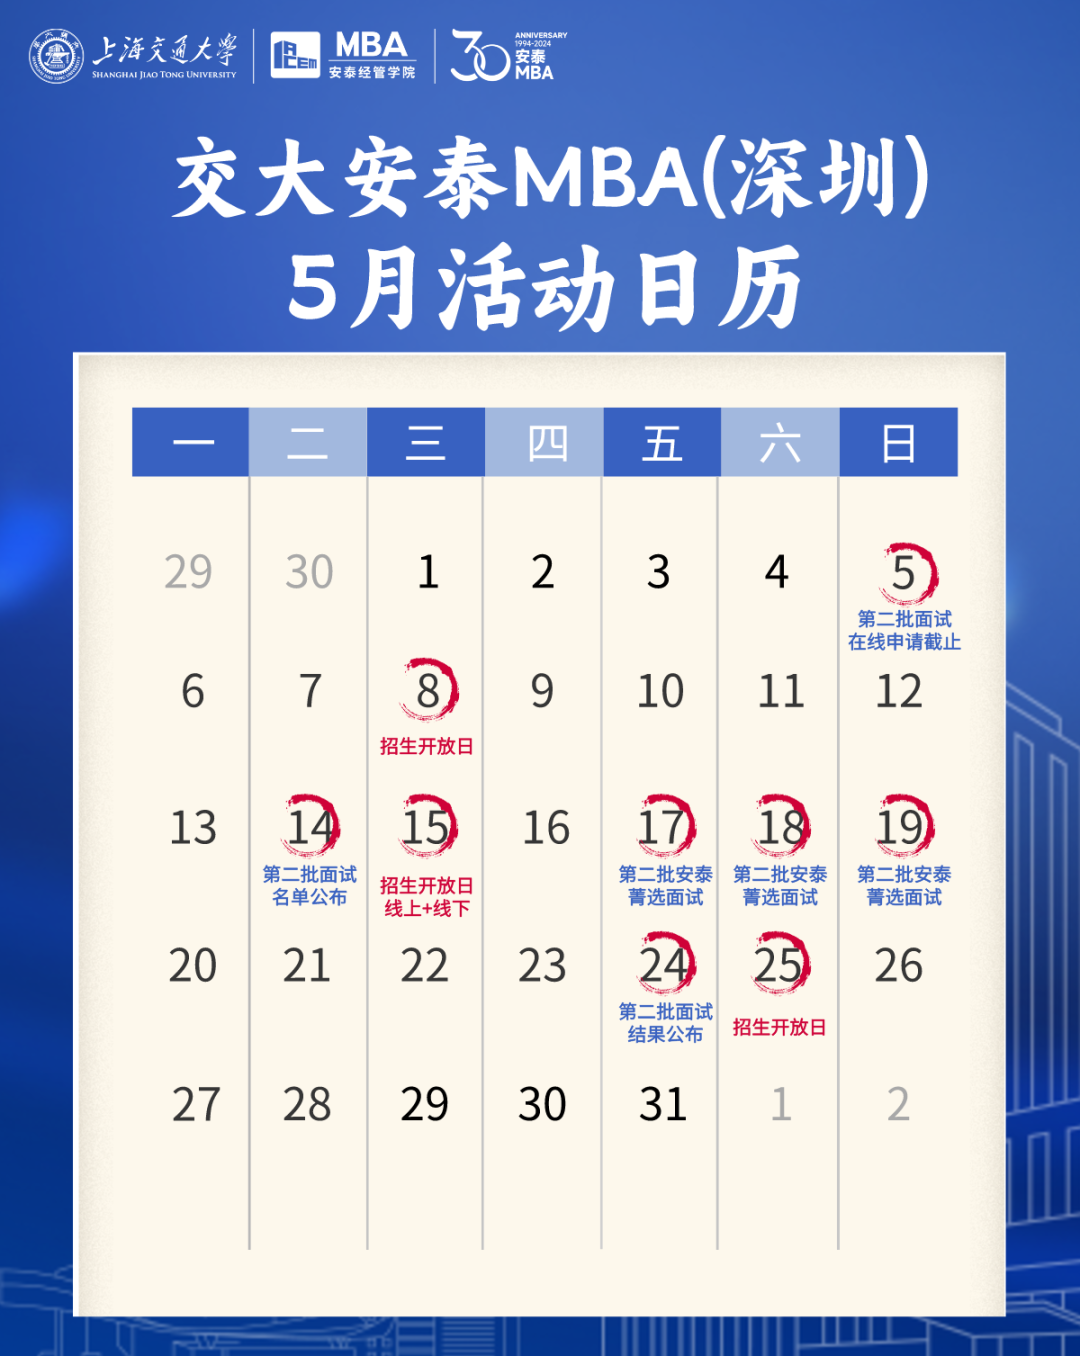 5月MBA深圳招生活动一览 | 招生开放日&安泰菁选面试